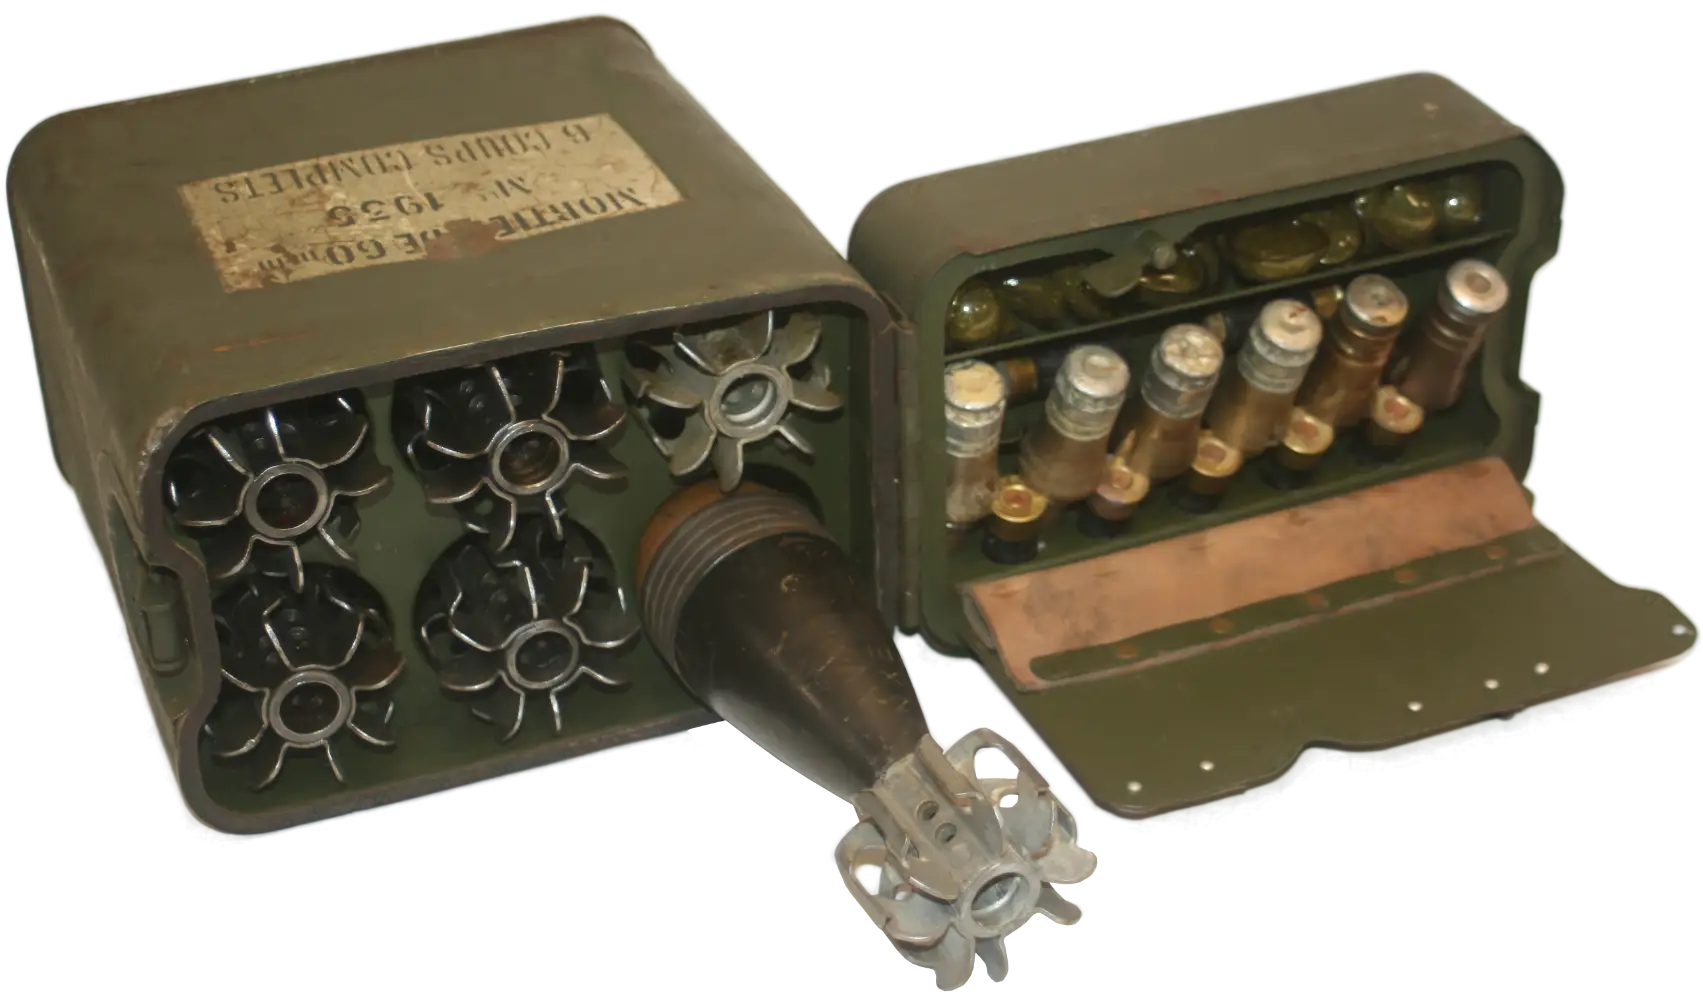 Ligne Maginot - Munition pour mortier de 60 mm FA mle 1935 (60 FA 35) - Exemple d’agencement d’une caisse tactique de 6 coups complets - On distingue les relais, fusées, et cartouches (dont une supplémentaire) parfaitement positionnés dans le couvercle.